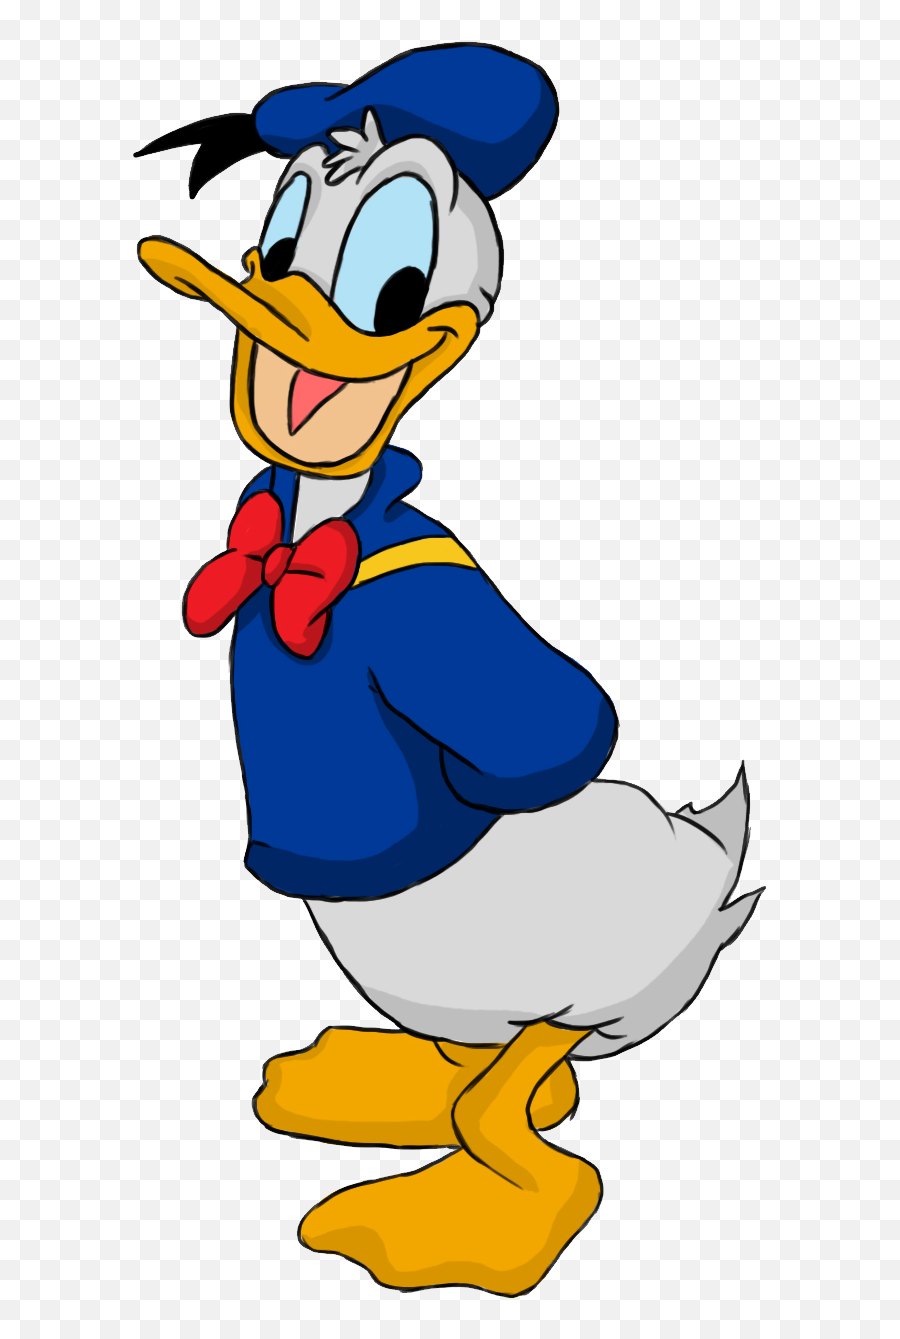 Donald Duck - Donald Duck Drawing Png,Donald Duck Transparent